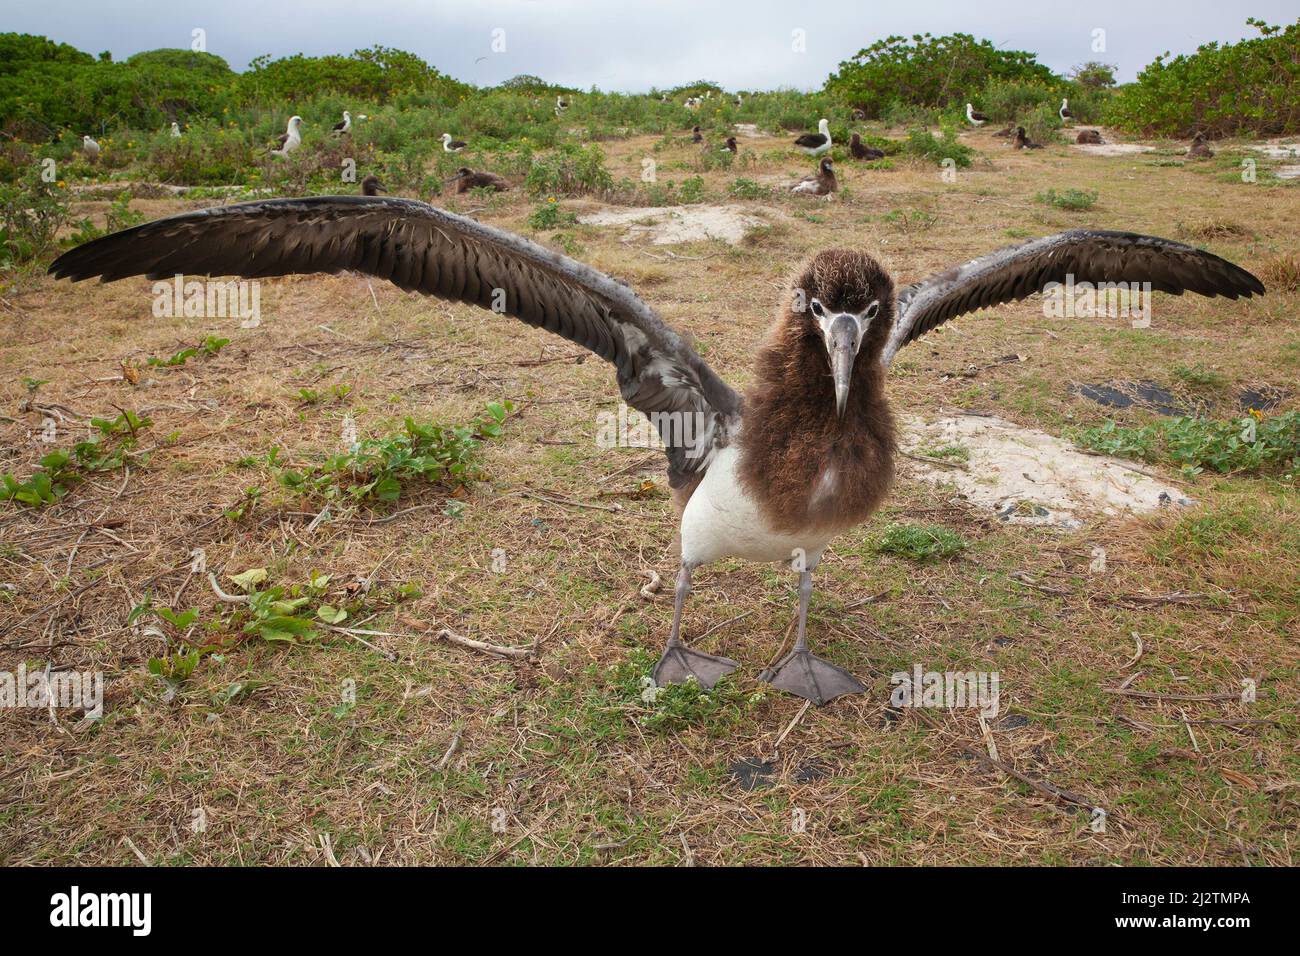 Laysan Albatros flejo ave en una colonia de anidación que se extiende y revolotora alas, ejercitando los músculos de vuelo antes de aprender a volar. Foto de stock